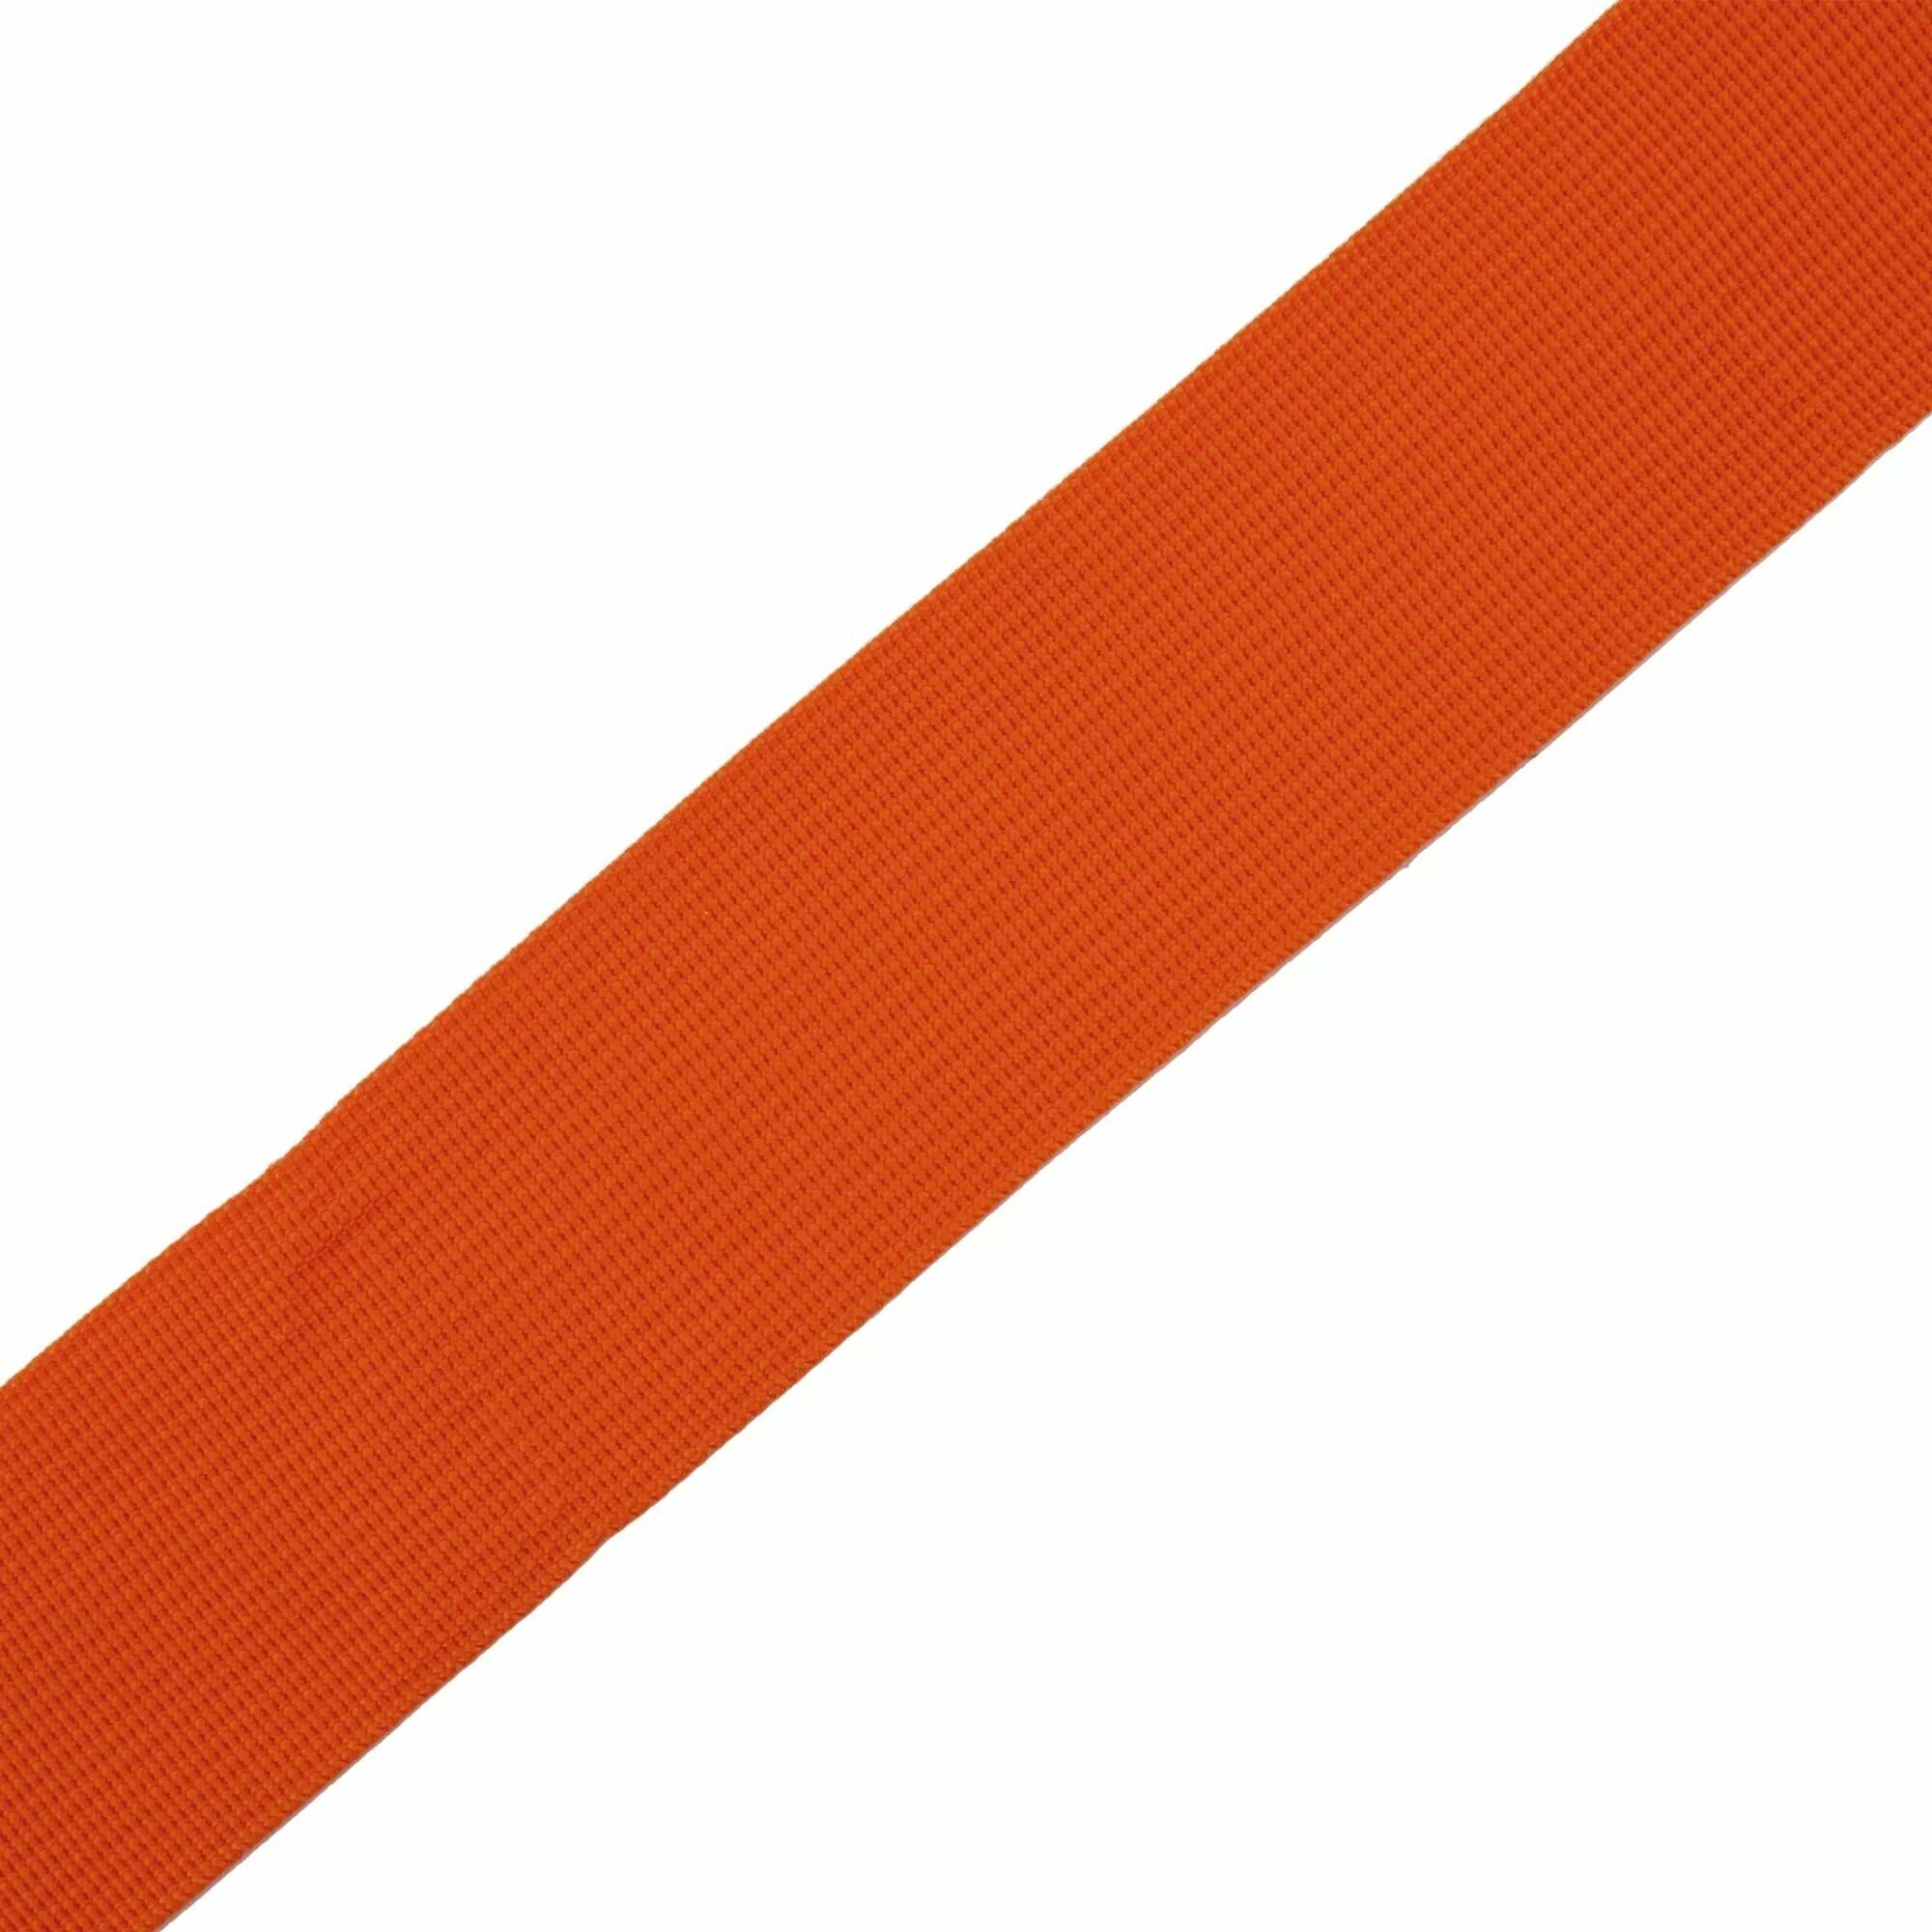 Ремни для переноски мебели цвет оранжевый, 2 шт.